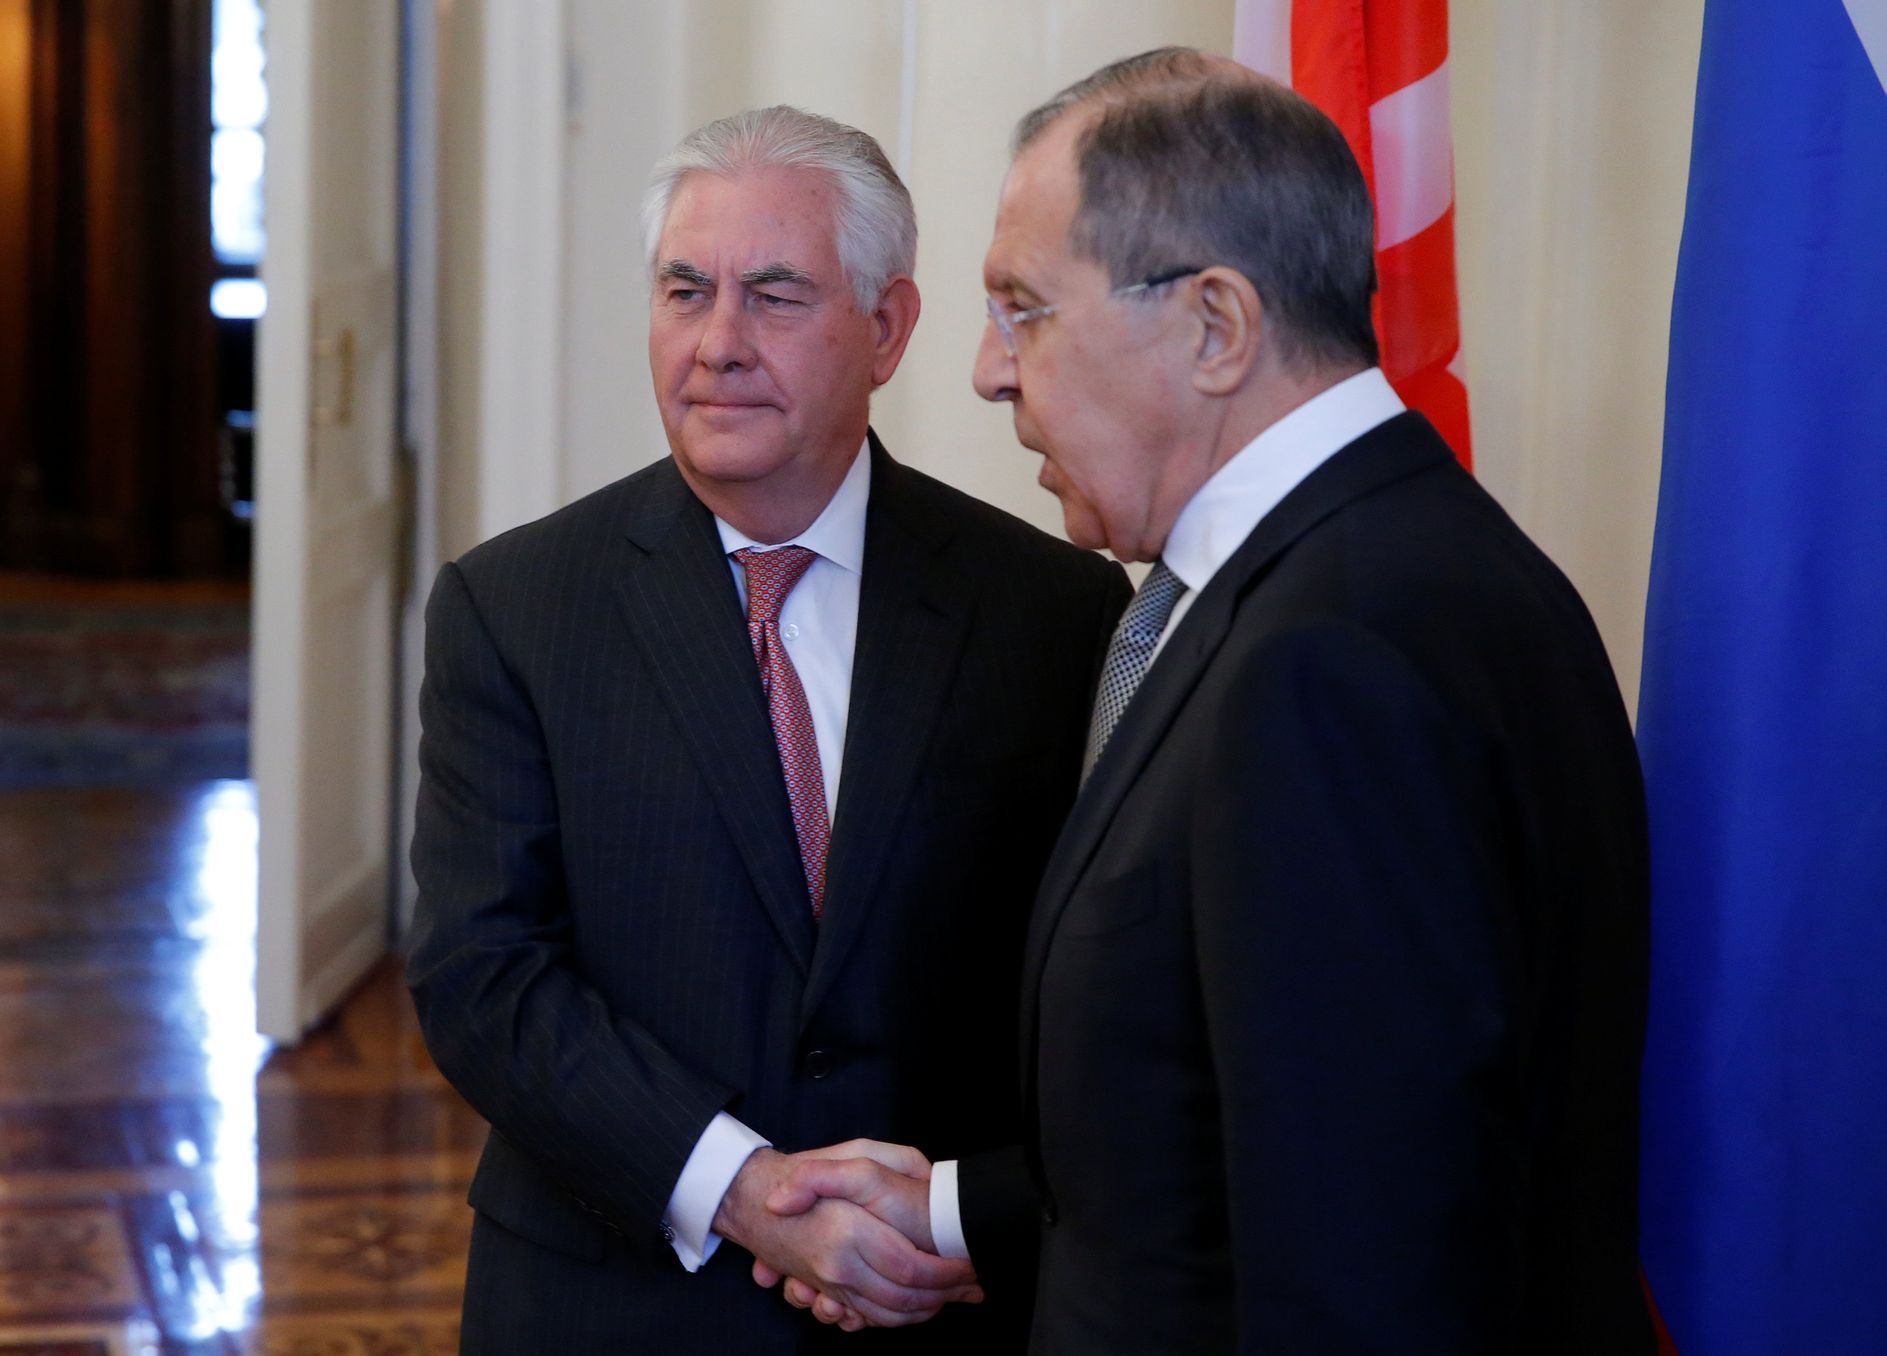 Tillerson a Lavrov v Moskvě